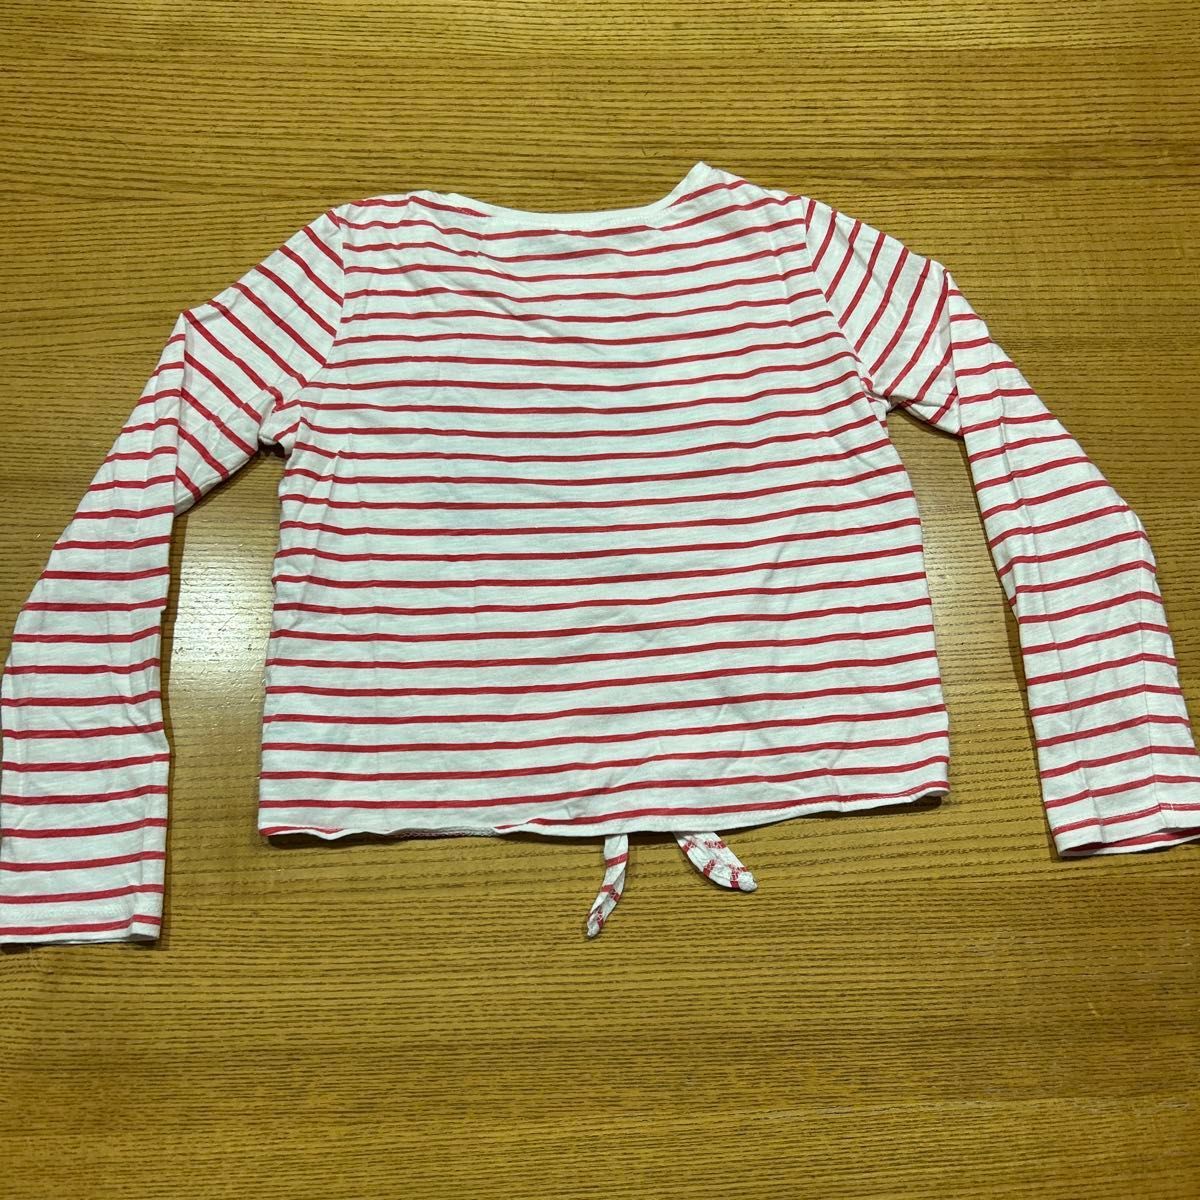 【H&M】(USED)ミニーちゃん 赤&白 ボーダー 丈短め 長袖Tシャツ 裾を結ぶデザイン 122/128(130cm)